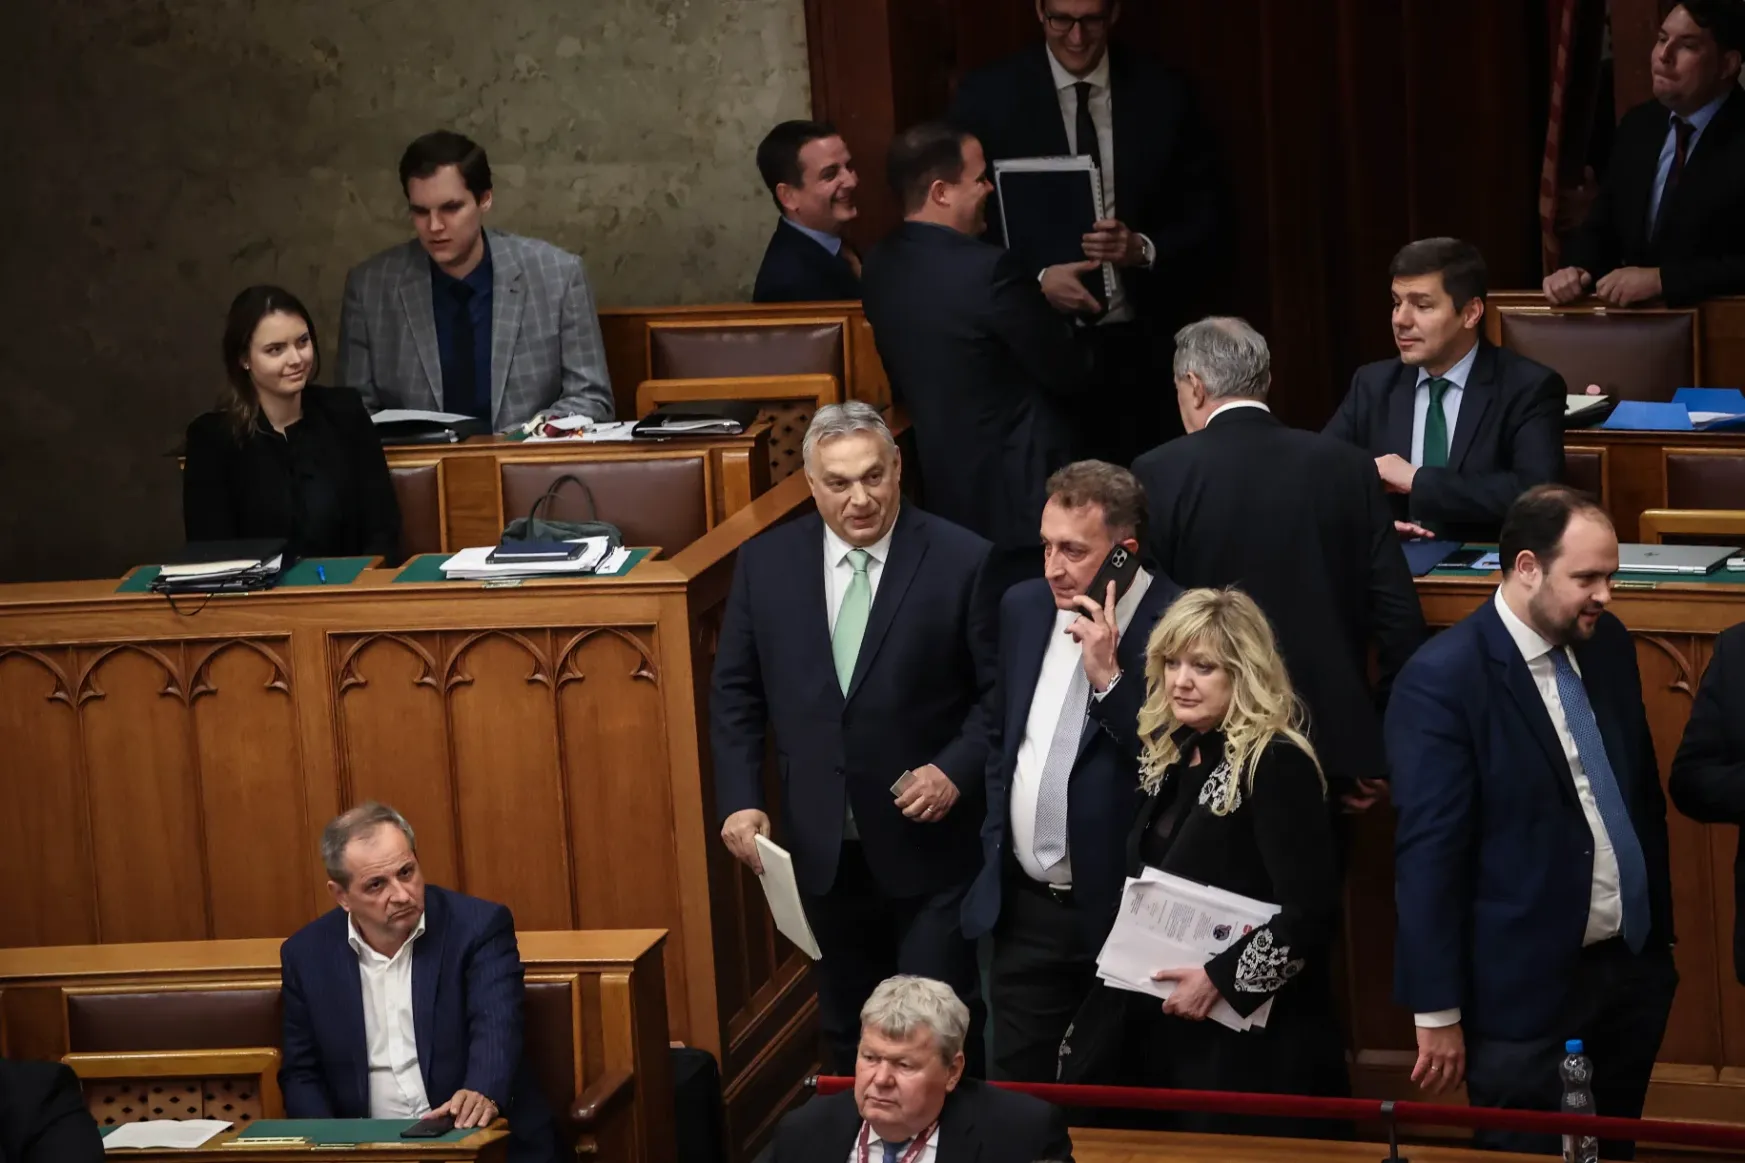 Gelencsér lekommunistázta Pintért és Matolcsyt, Orbán szerint ők sokkal többet tettek a hazájukért, mint a Momentum frakcióvezetője